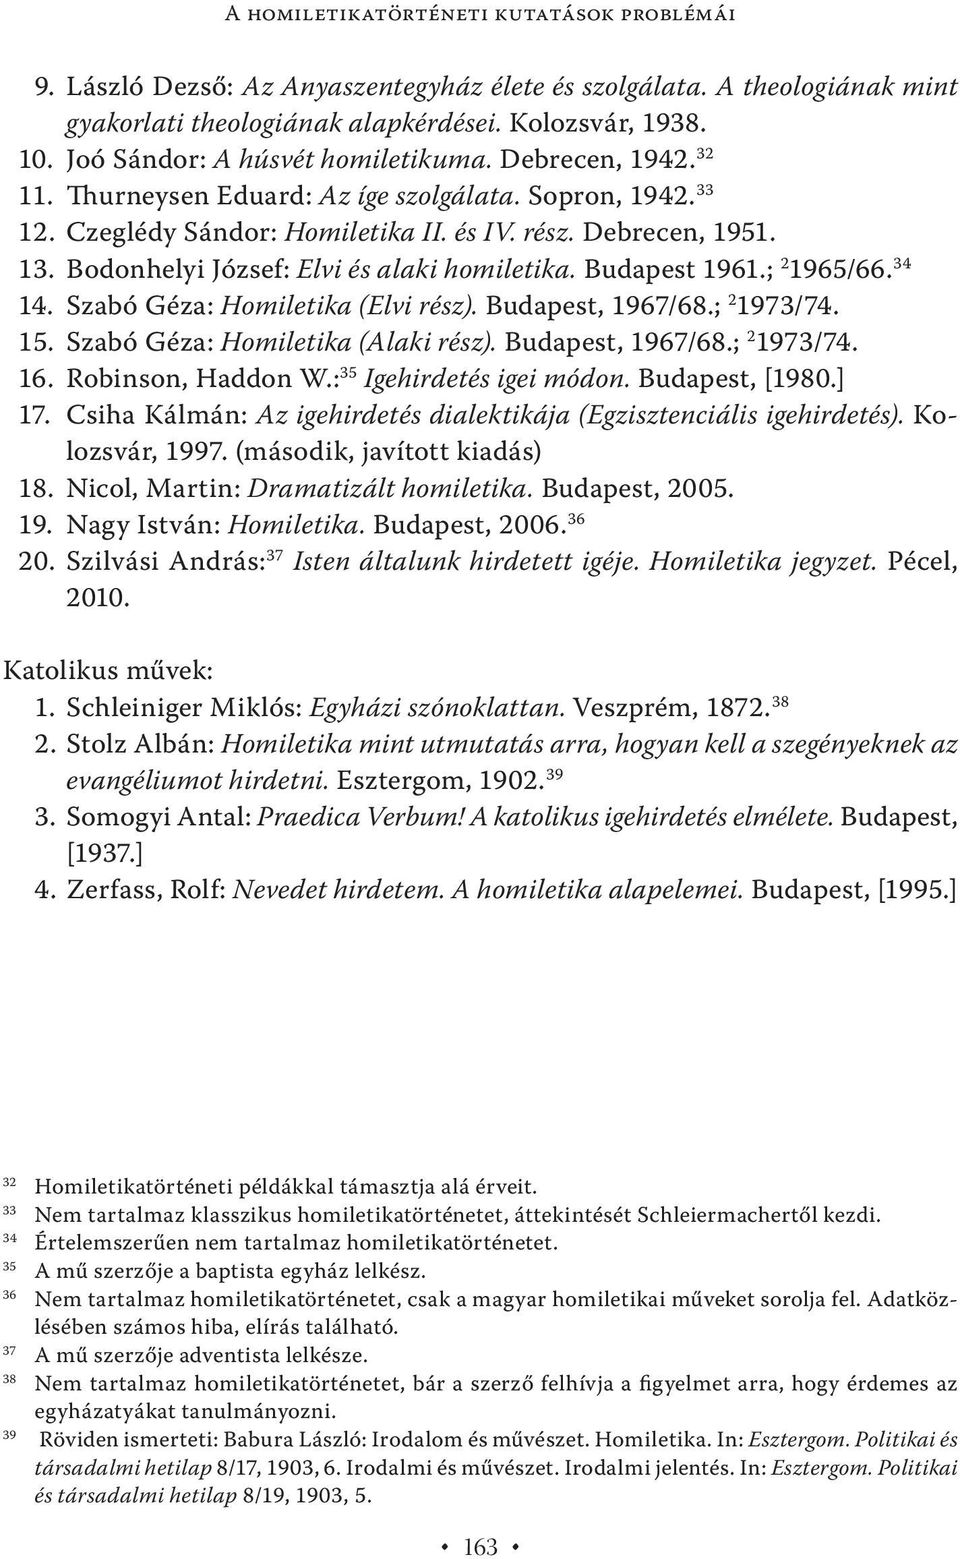 Bodonhelyi József: Elvi és alaki homiletika. Budapest 1961.; 2 1965/66. 34 14. Szabó Géza: Homiletika (Elvi rész). Budapest, 1967/68.; 2 1973/74. 15. Szabó Géza: Homiletika (Alaki rész).